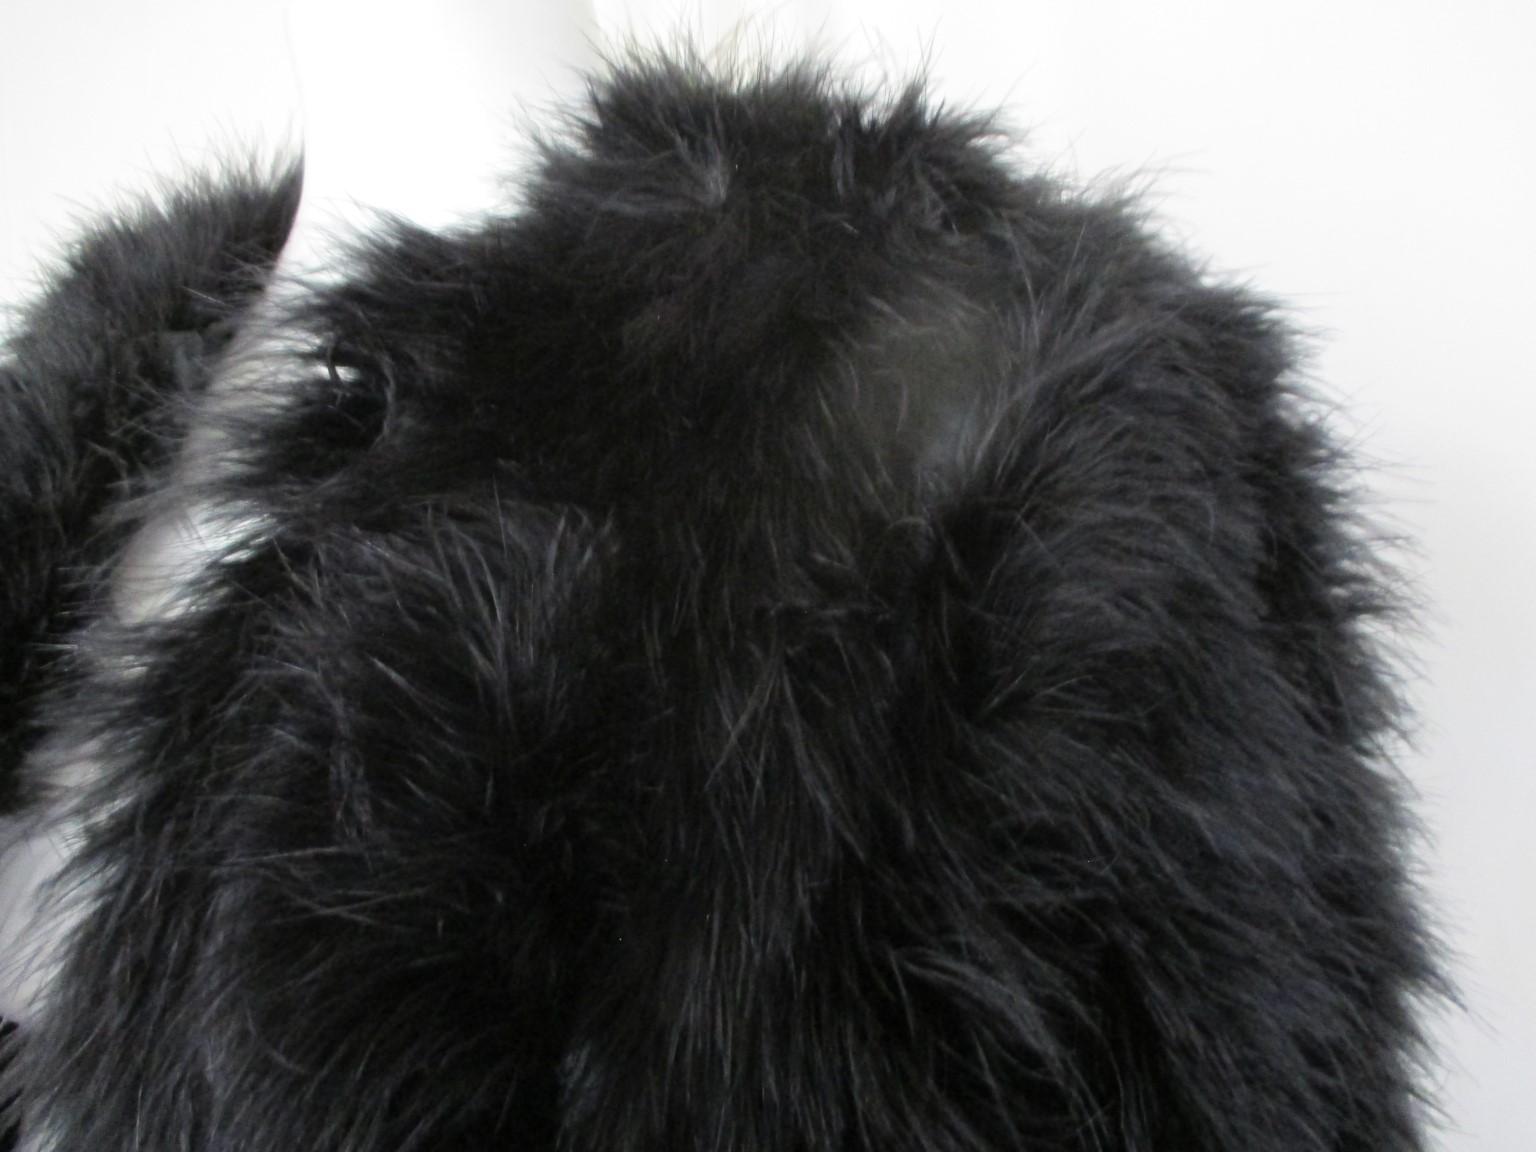 Ce magnifique boléro/veste est fait de fourrure de plumes d'autruche noire très douce et est léger à porter.    

Nous proposons d'autres articles de fourrure de luxe, voir notre vitrine.

Détails :
Doublure noire
pas de poches
1 fermeture à crochet